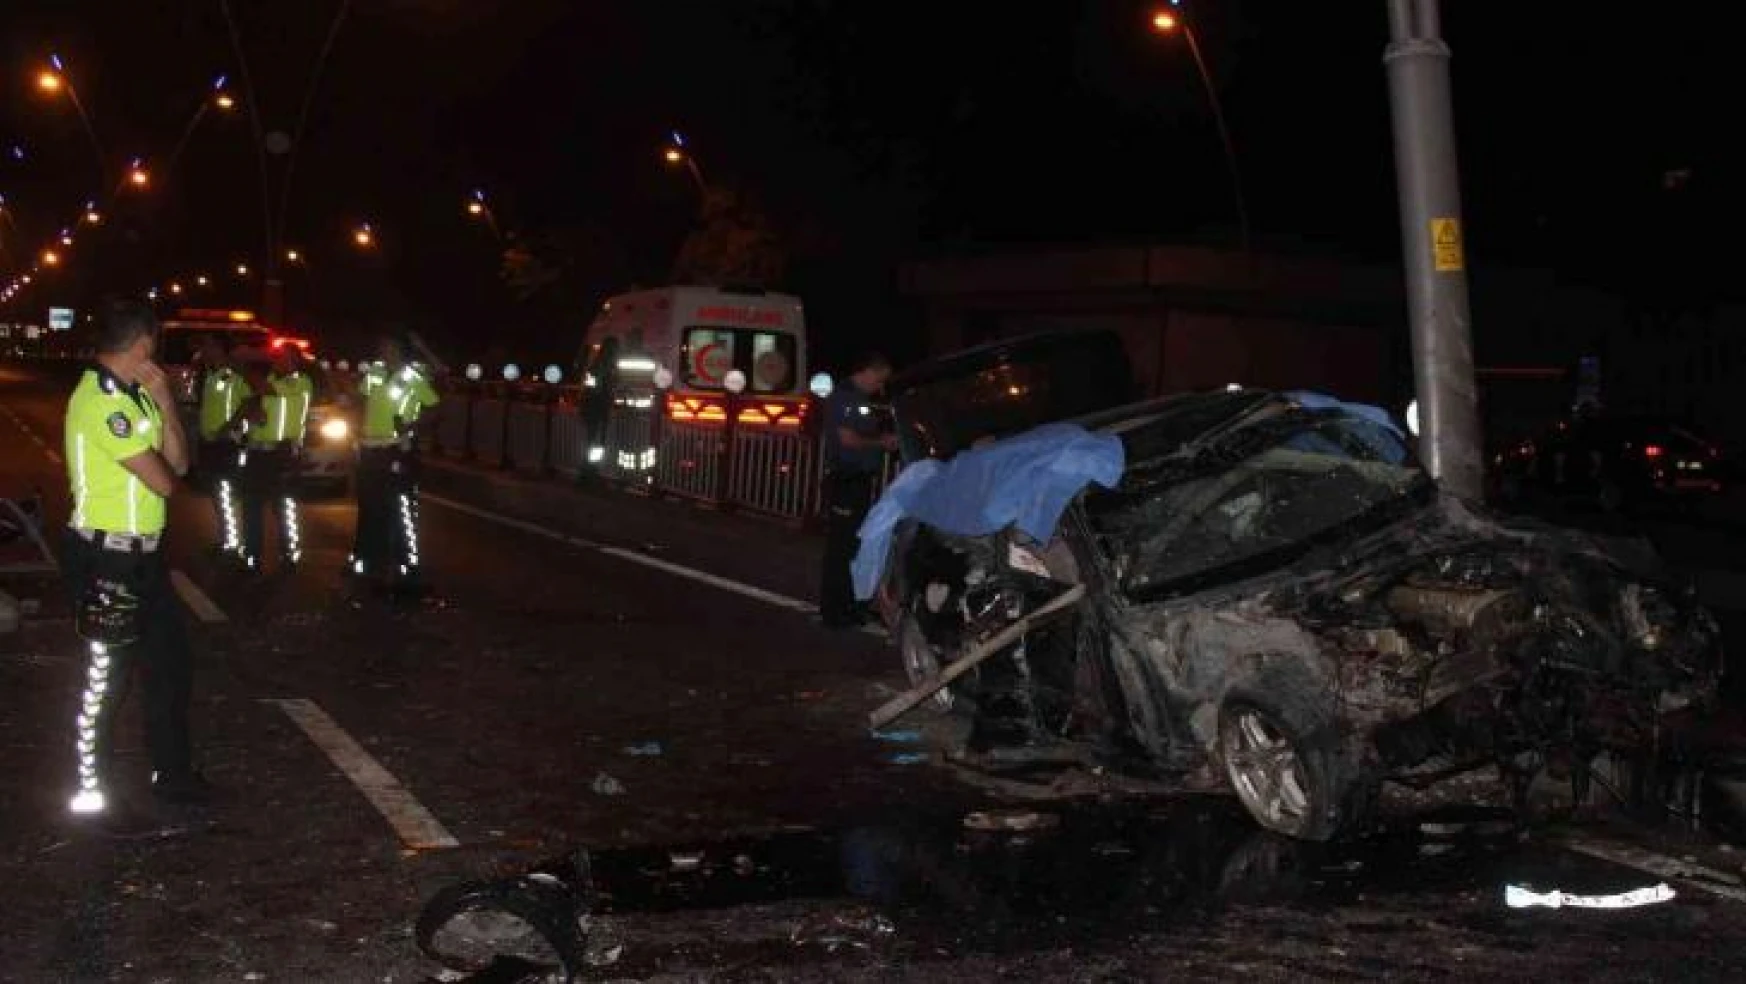 Kayseri'de feci kaza: 2 ölü, 2 yaralı